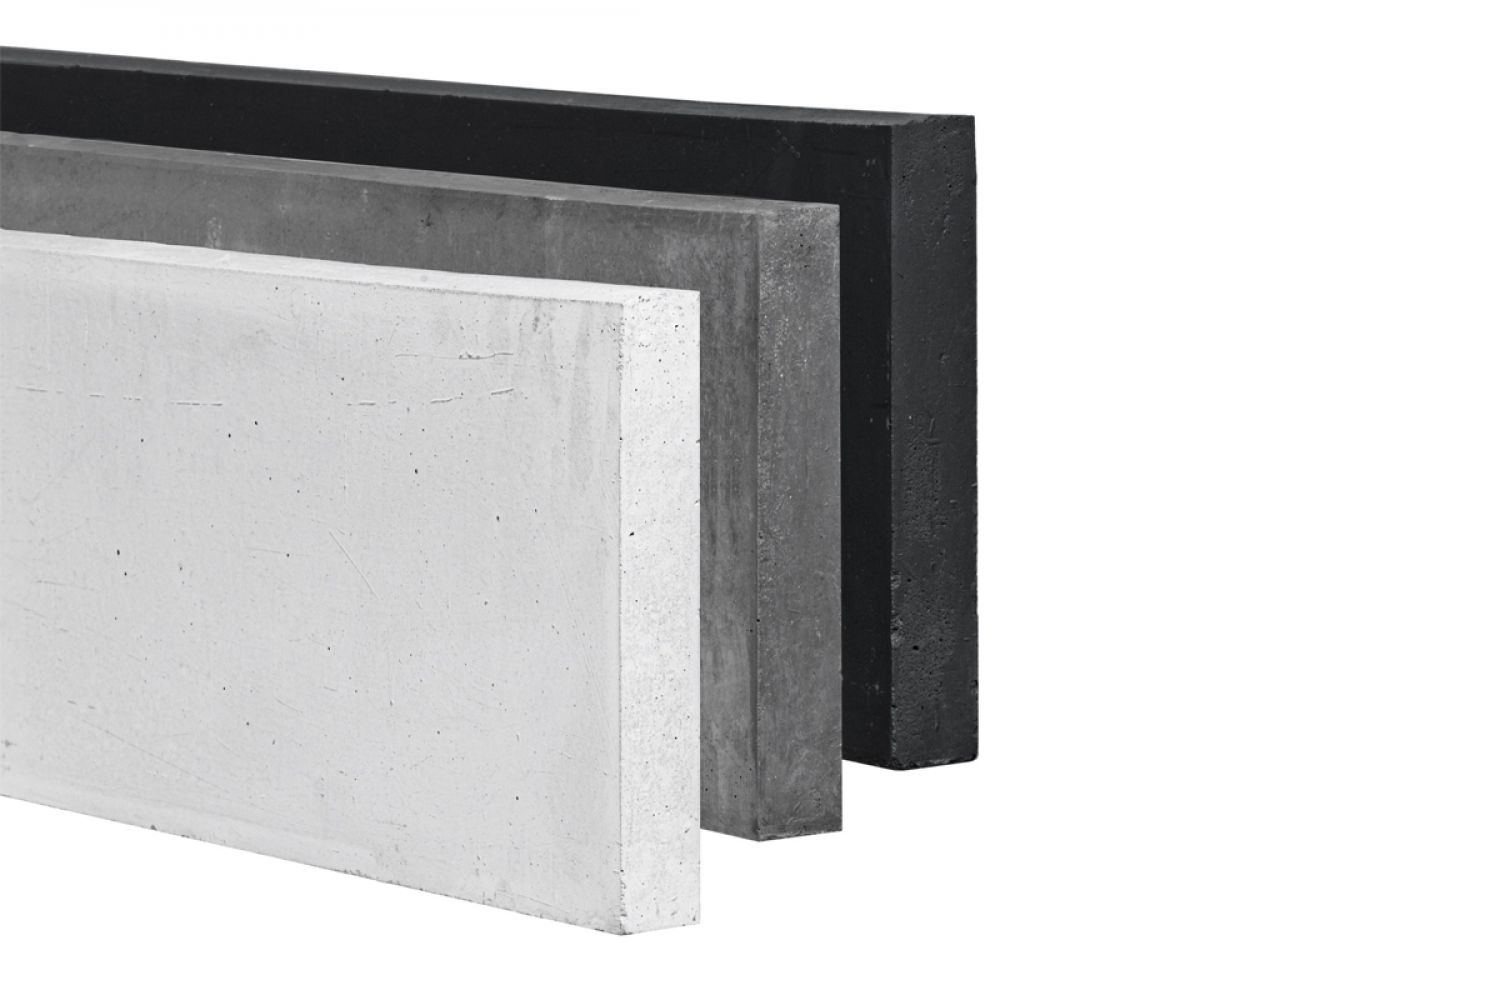 Betonnen onderplaat 3,5x25x180 cm wit/grijs 2-zijdig glad met afwateringsdakje